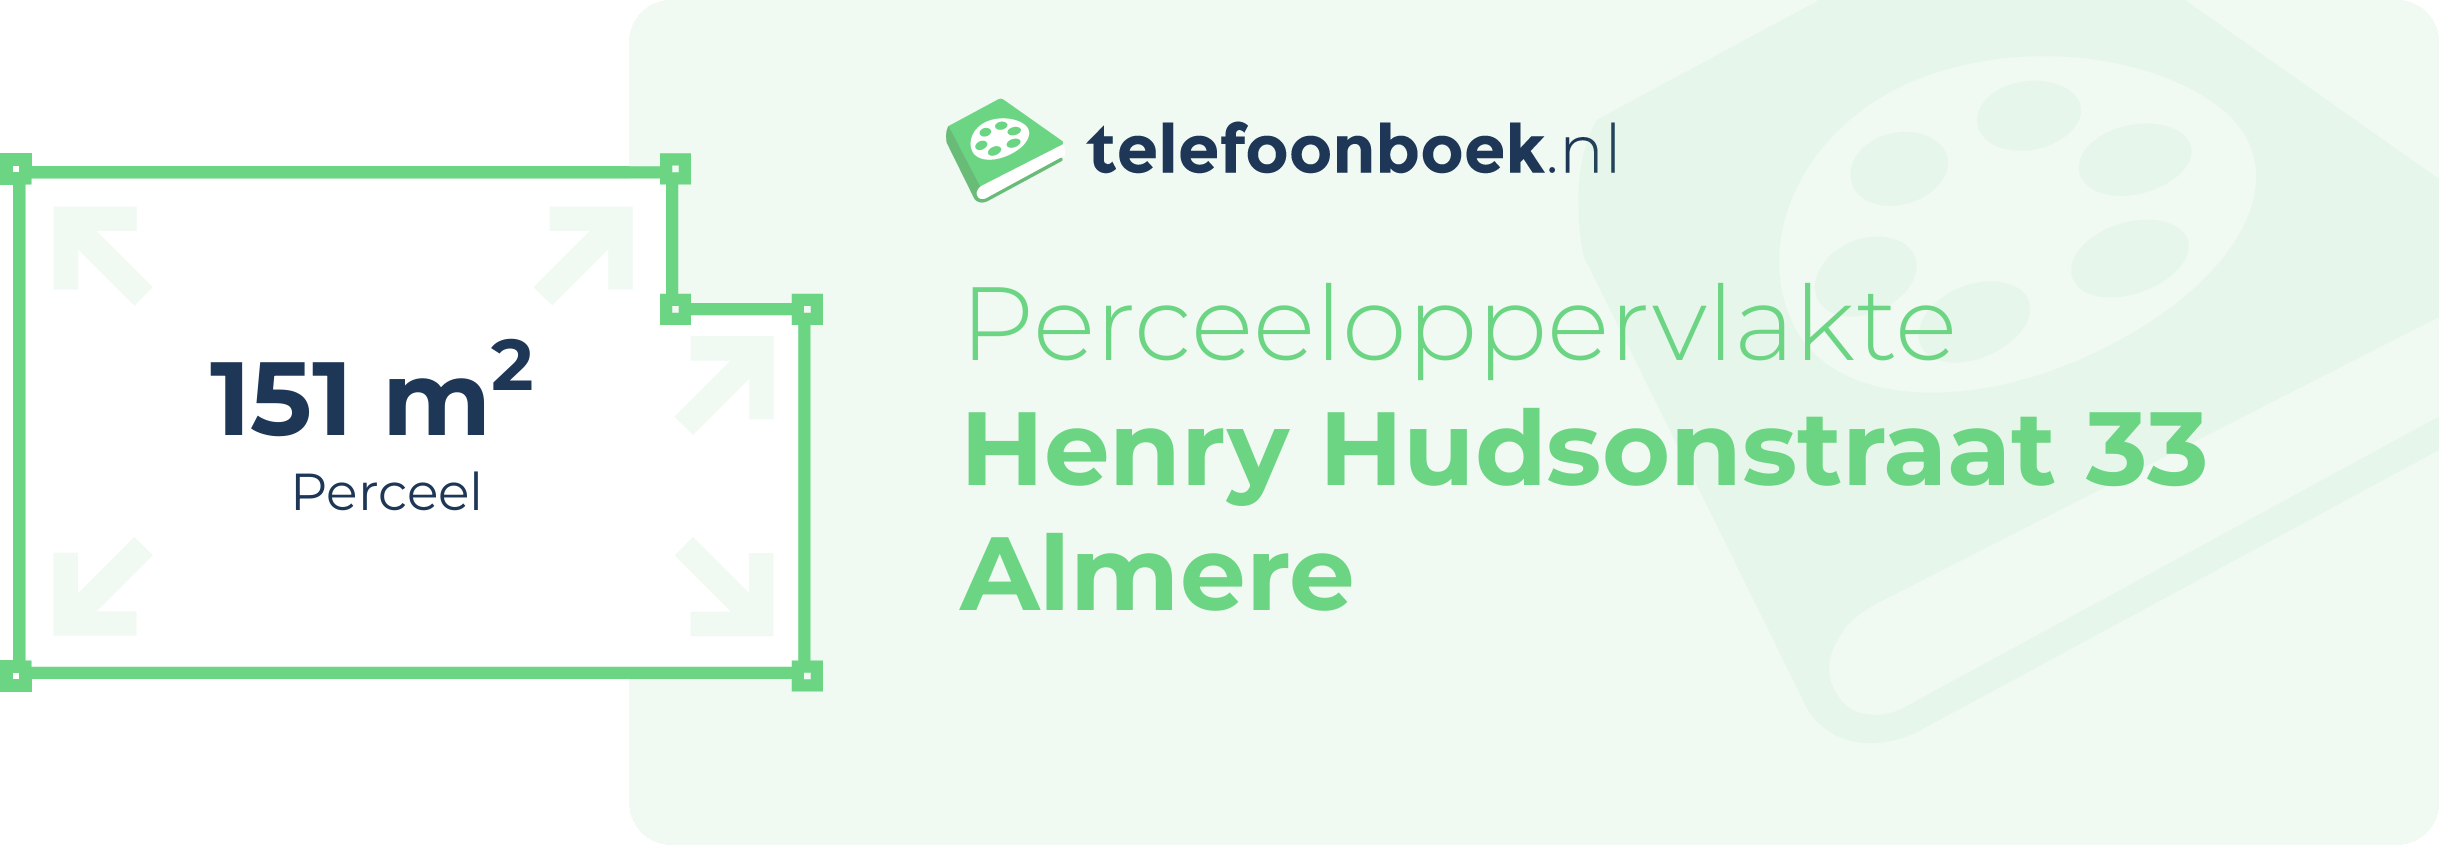 Perceeloppervlakte Henry Hudsonstraat 33 Almere